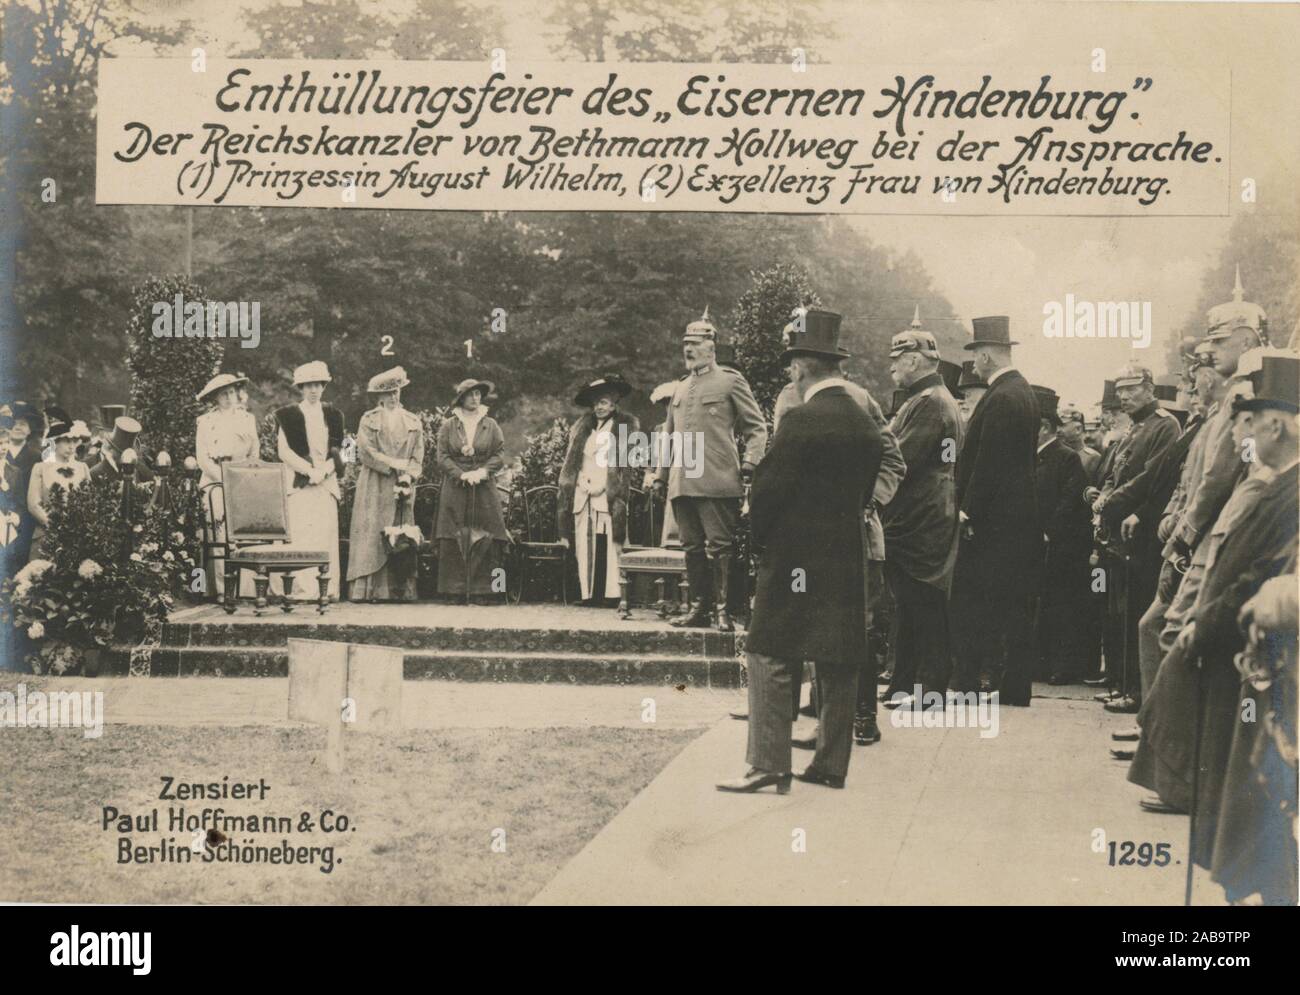 Enthüllungsfeier des Eisernen Hinderburg. Der Reichskanzler von Bethmann Hollweg bei der Ansprache. (1) Prinzessin August Wilhelm, (2) Exzellenz Frau Stockfoto